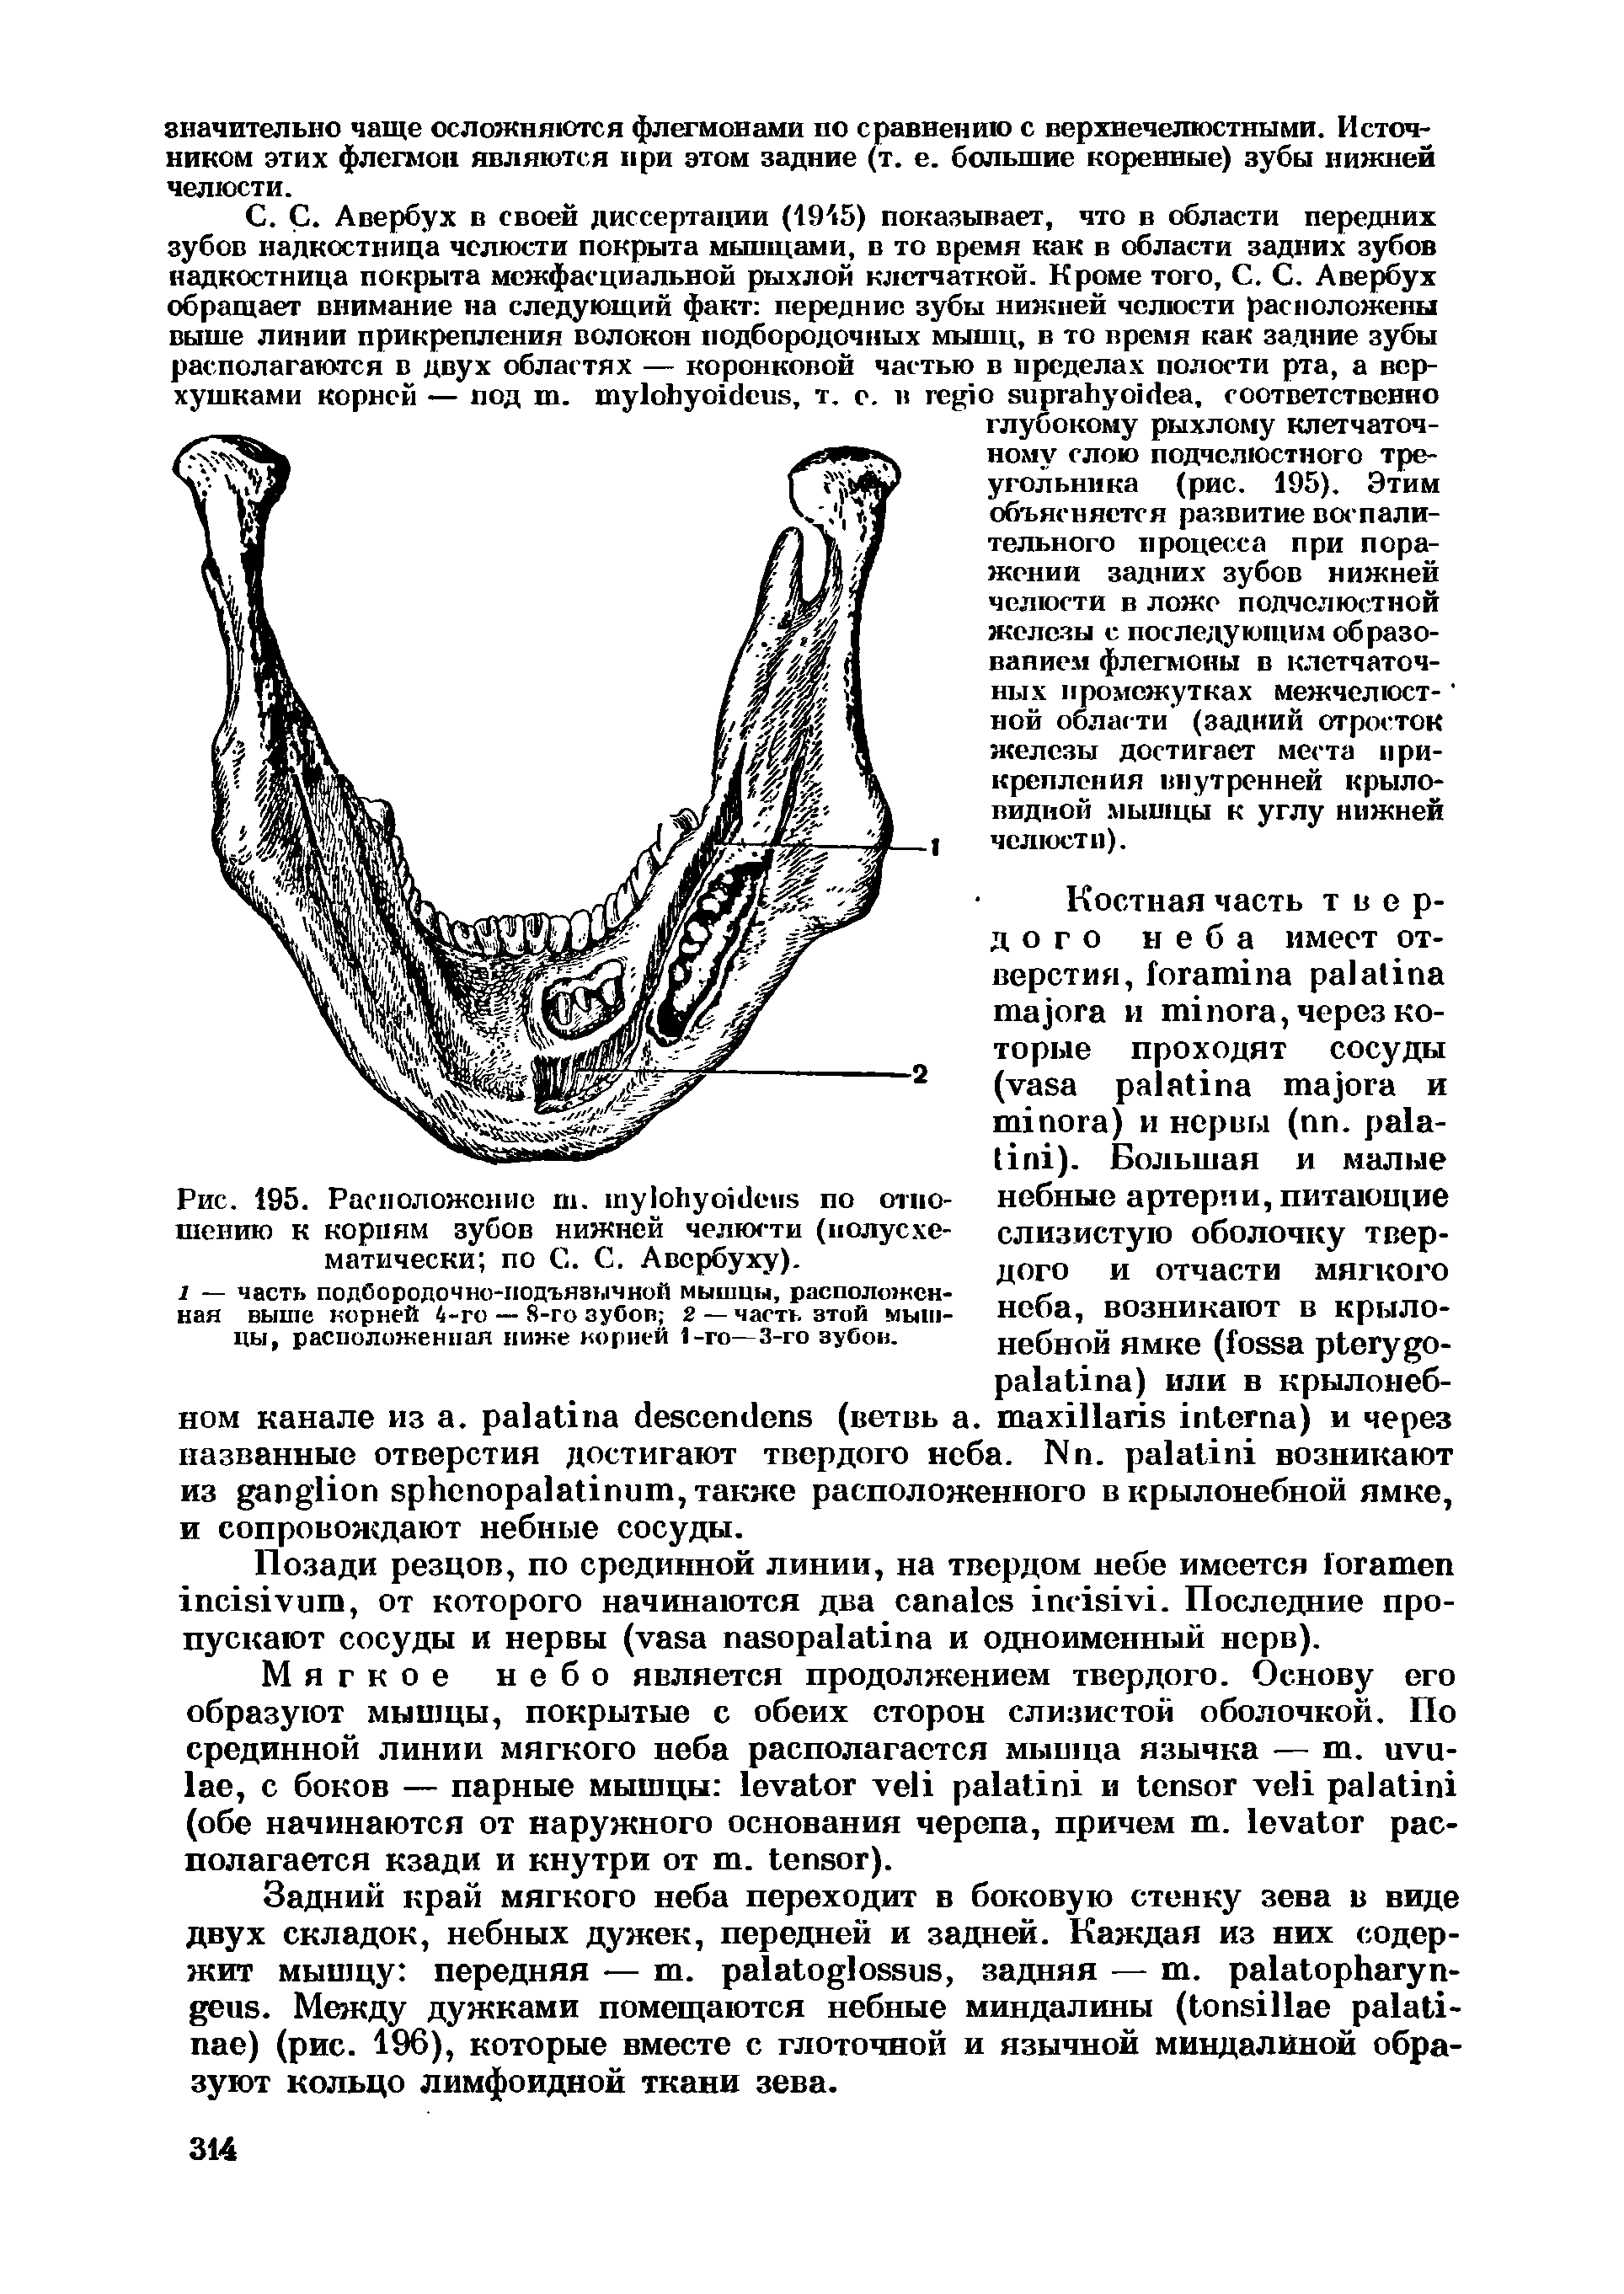 Рис. 195. Расположение ш. по отношению к корням зубов нижней челюсти (иолусхе-матически по С. С. Авербуху).